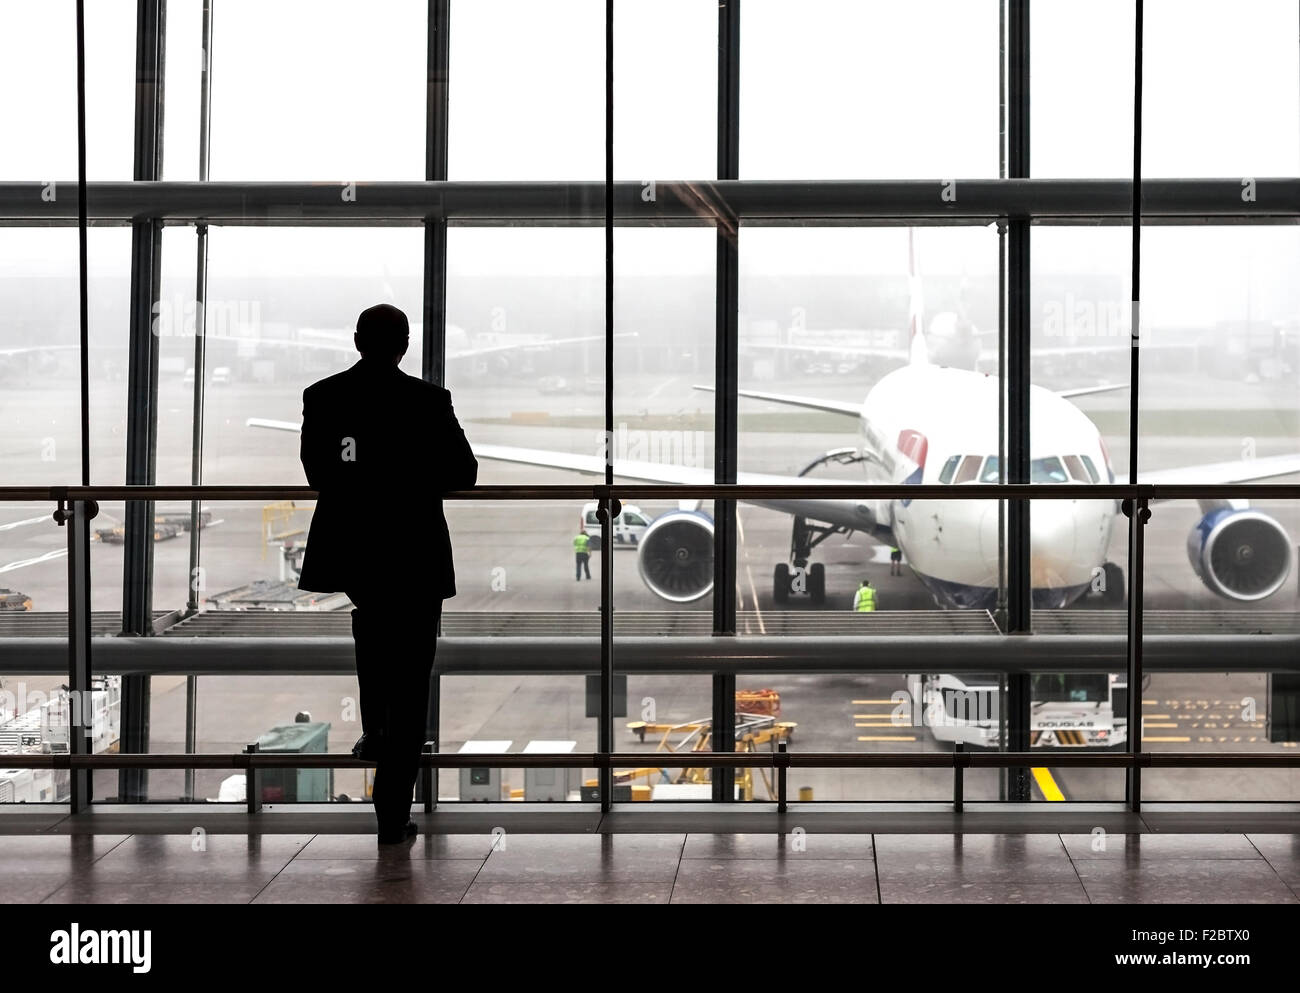 Londres, Royaume-Uni - 14 août 2015 : Silhouette d'un voyageur en attente d'un avion à l'aéroport Heathrow hall de départ un jour de pluie Banque D'Images